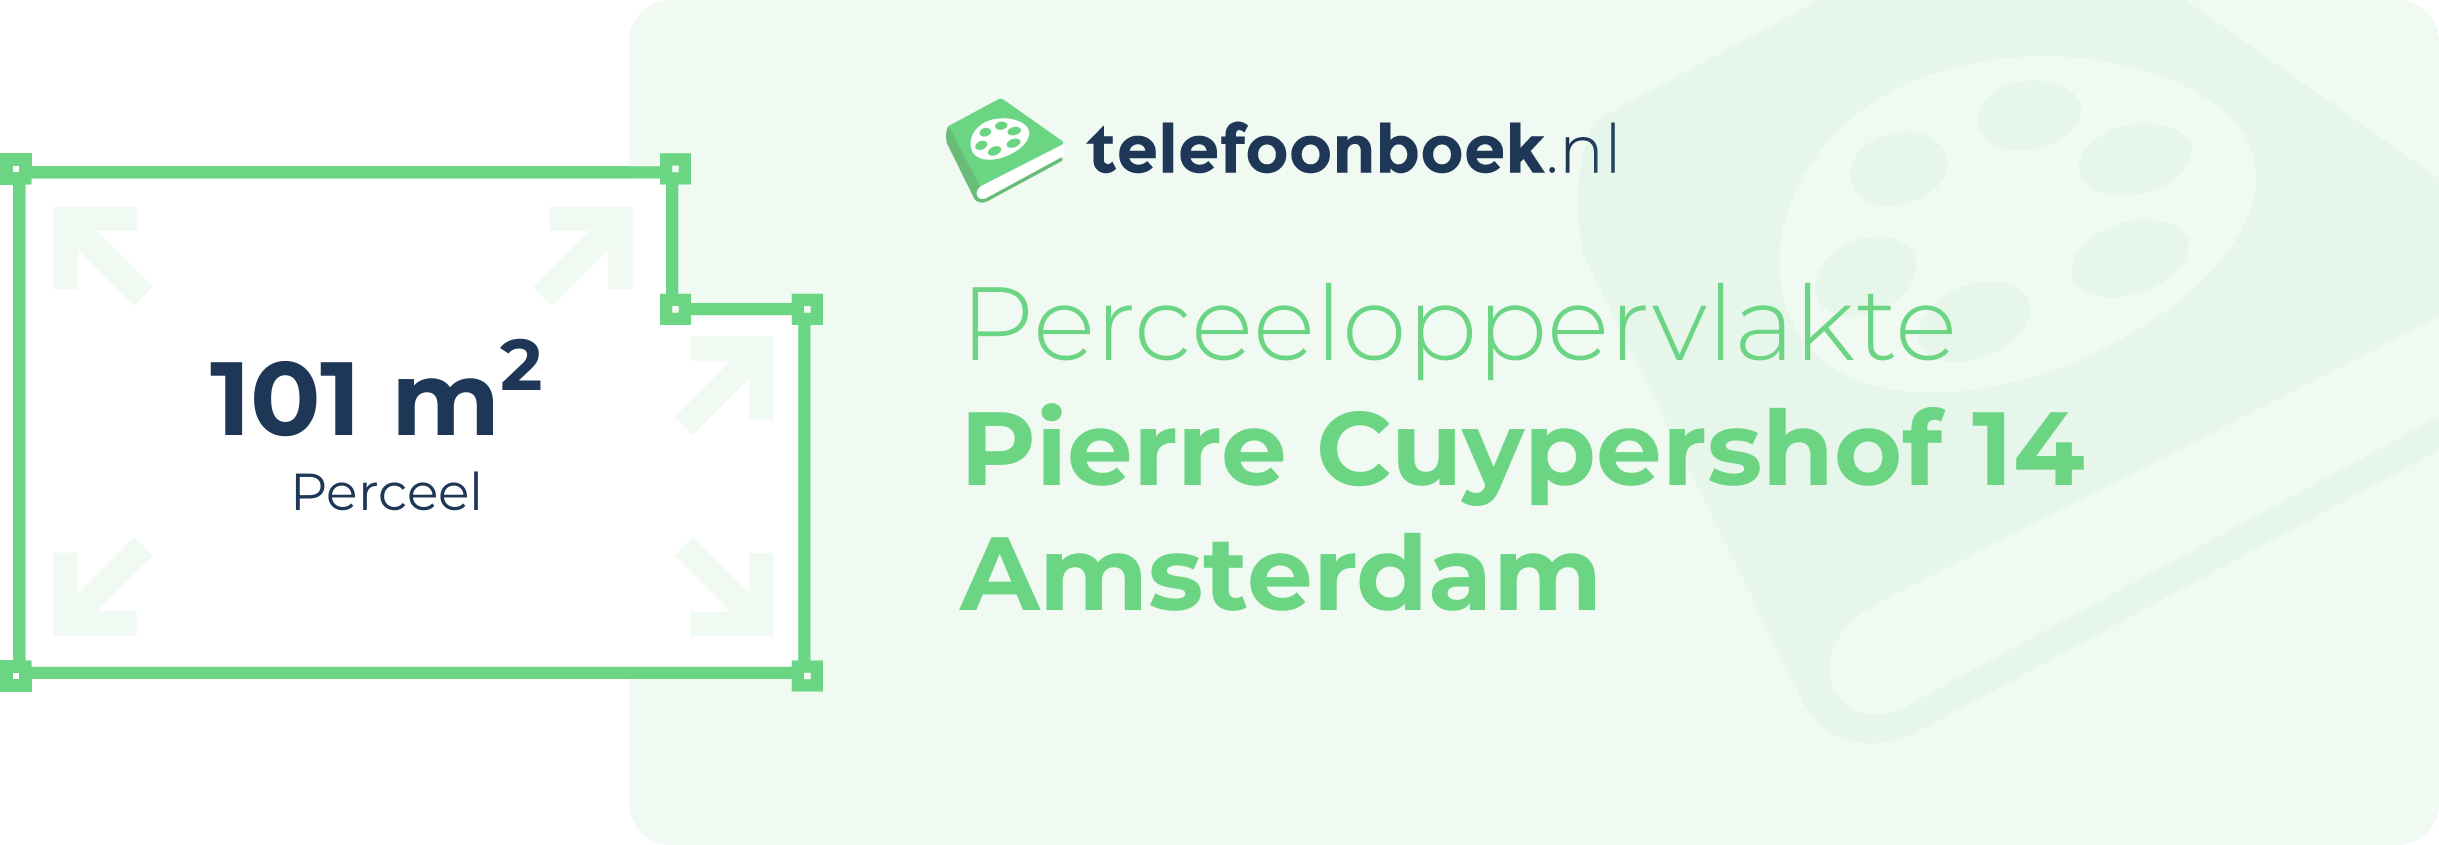 Perceeloppervlakte Pierre Cuypershof 14 Amsterdam